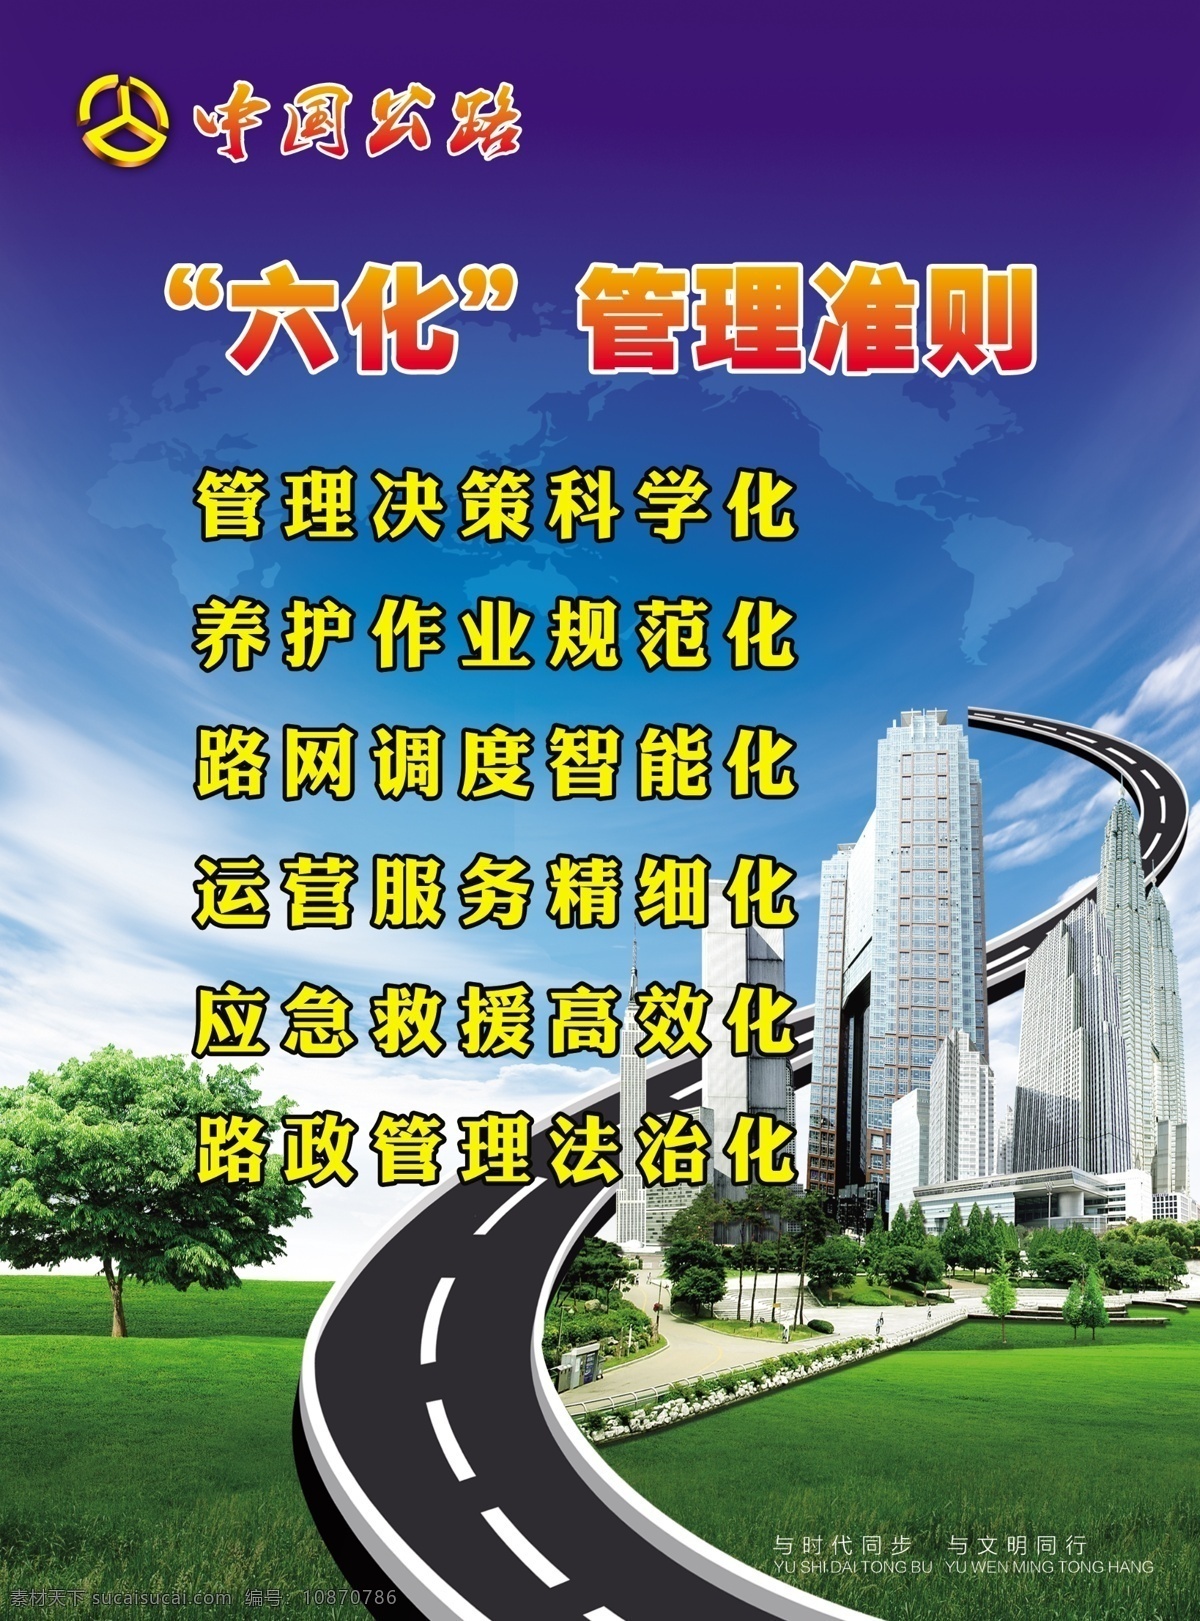 六化管理准则 中国公路 宣传栏 照片图版 展板 模板 背景 公路标 红色背景 展板样式 单位展板 公路局 政府展板 六化管理 平面设计 展板模板